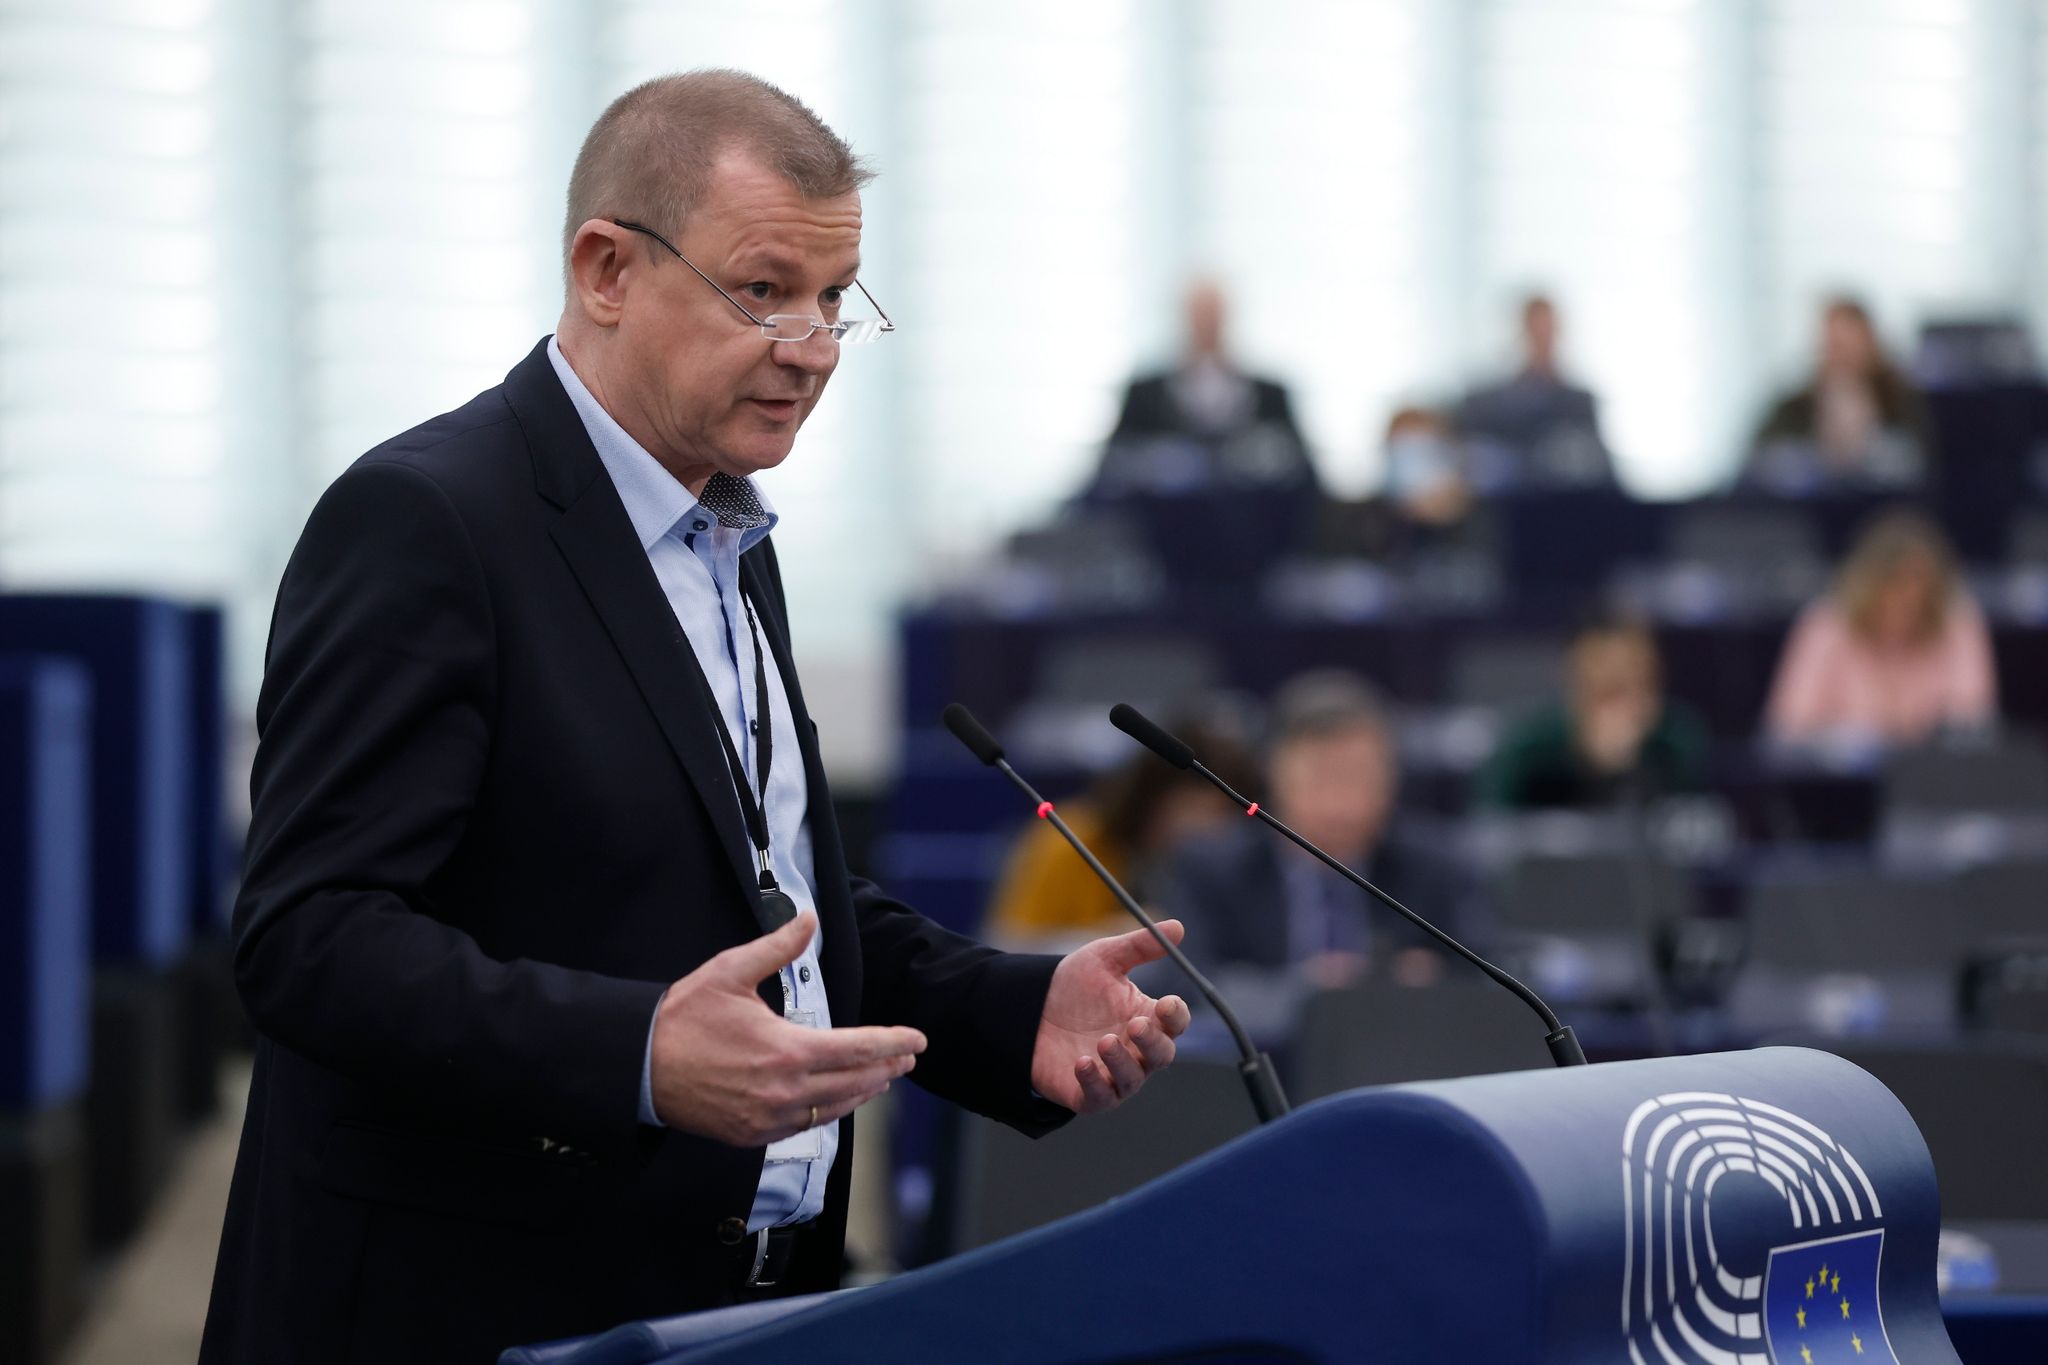 Der deutsche CDU-Politiker Markus Pieper verzichtet nach heftiger Kritik an seiner Ernennung auf das Amt als Beauftragter der EU-Kommission für kleine und mittelgroße Unternehmen.